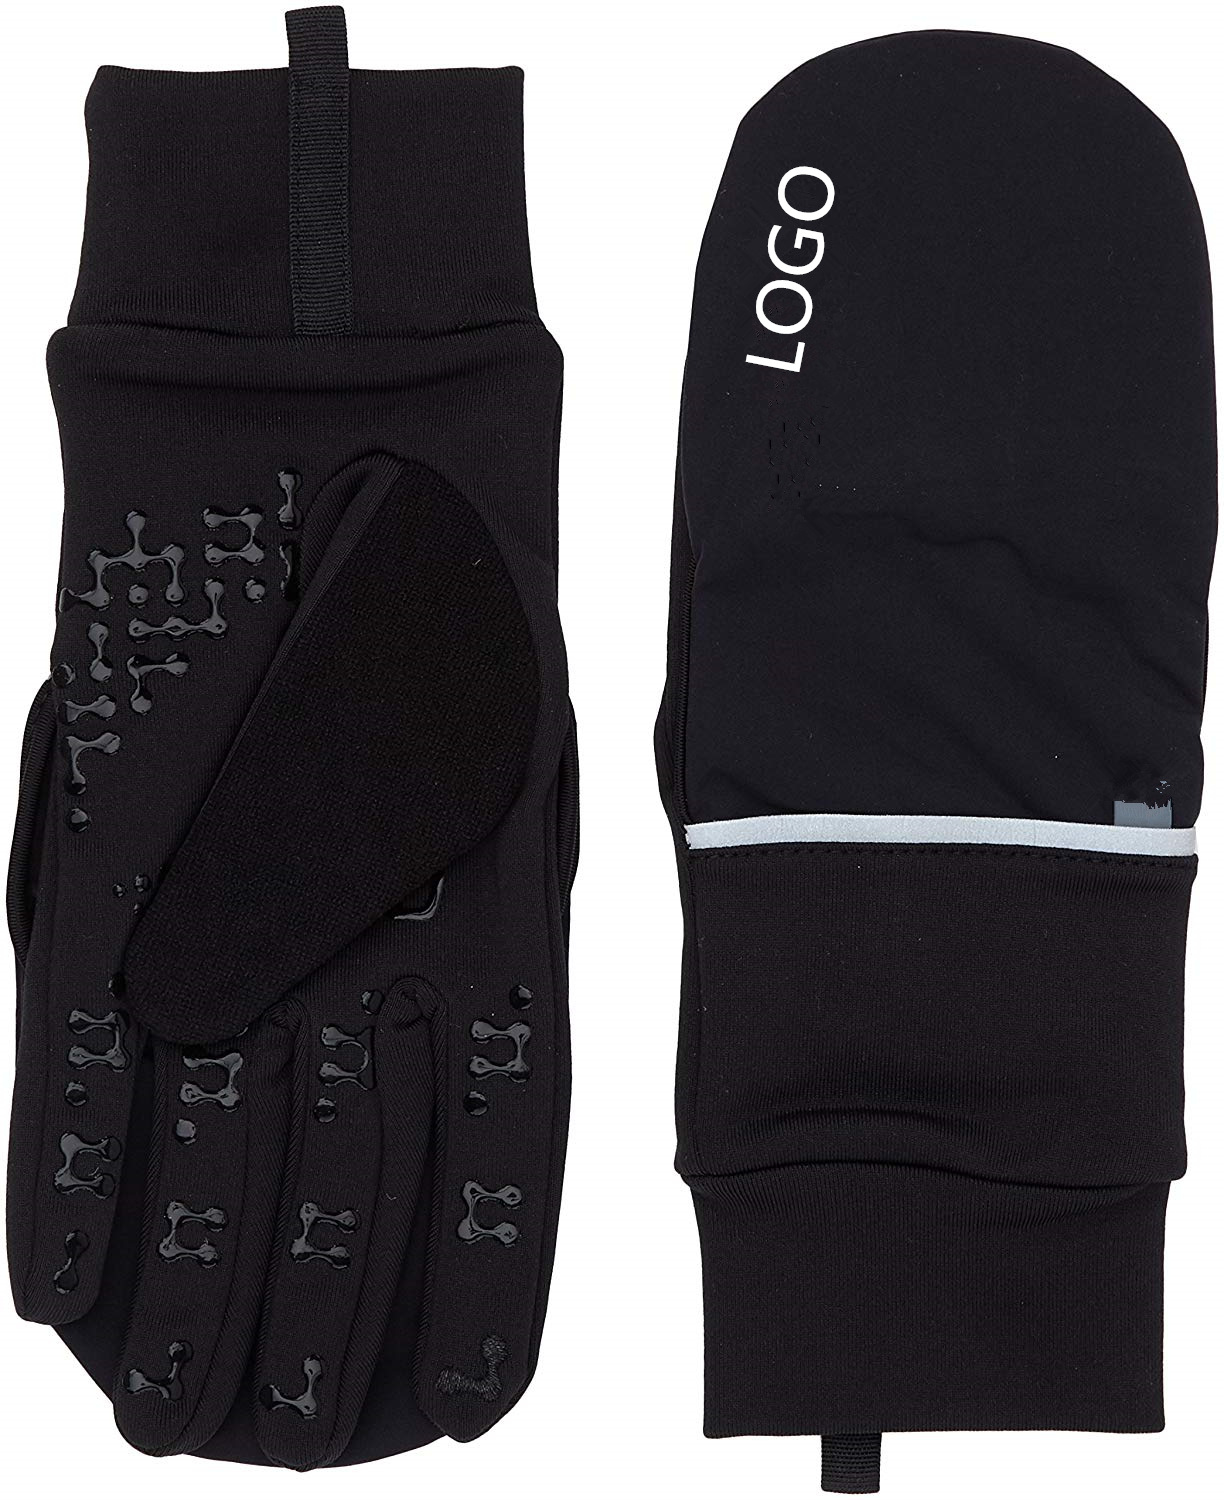 户外运动跑步手套 翻盖防水反光运动手套  防风保暖手套